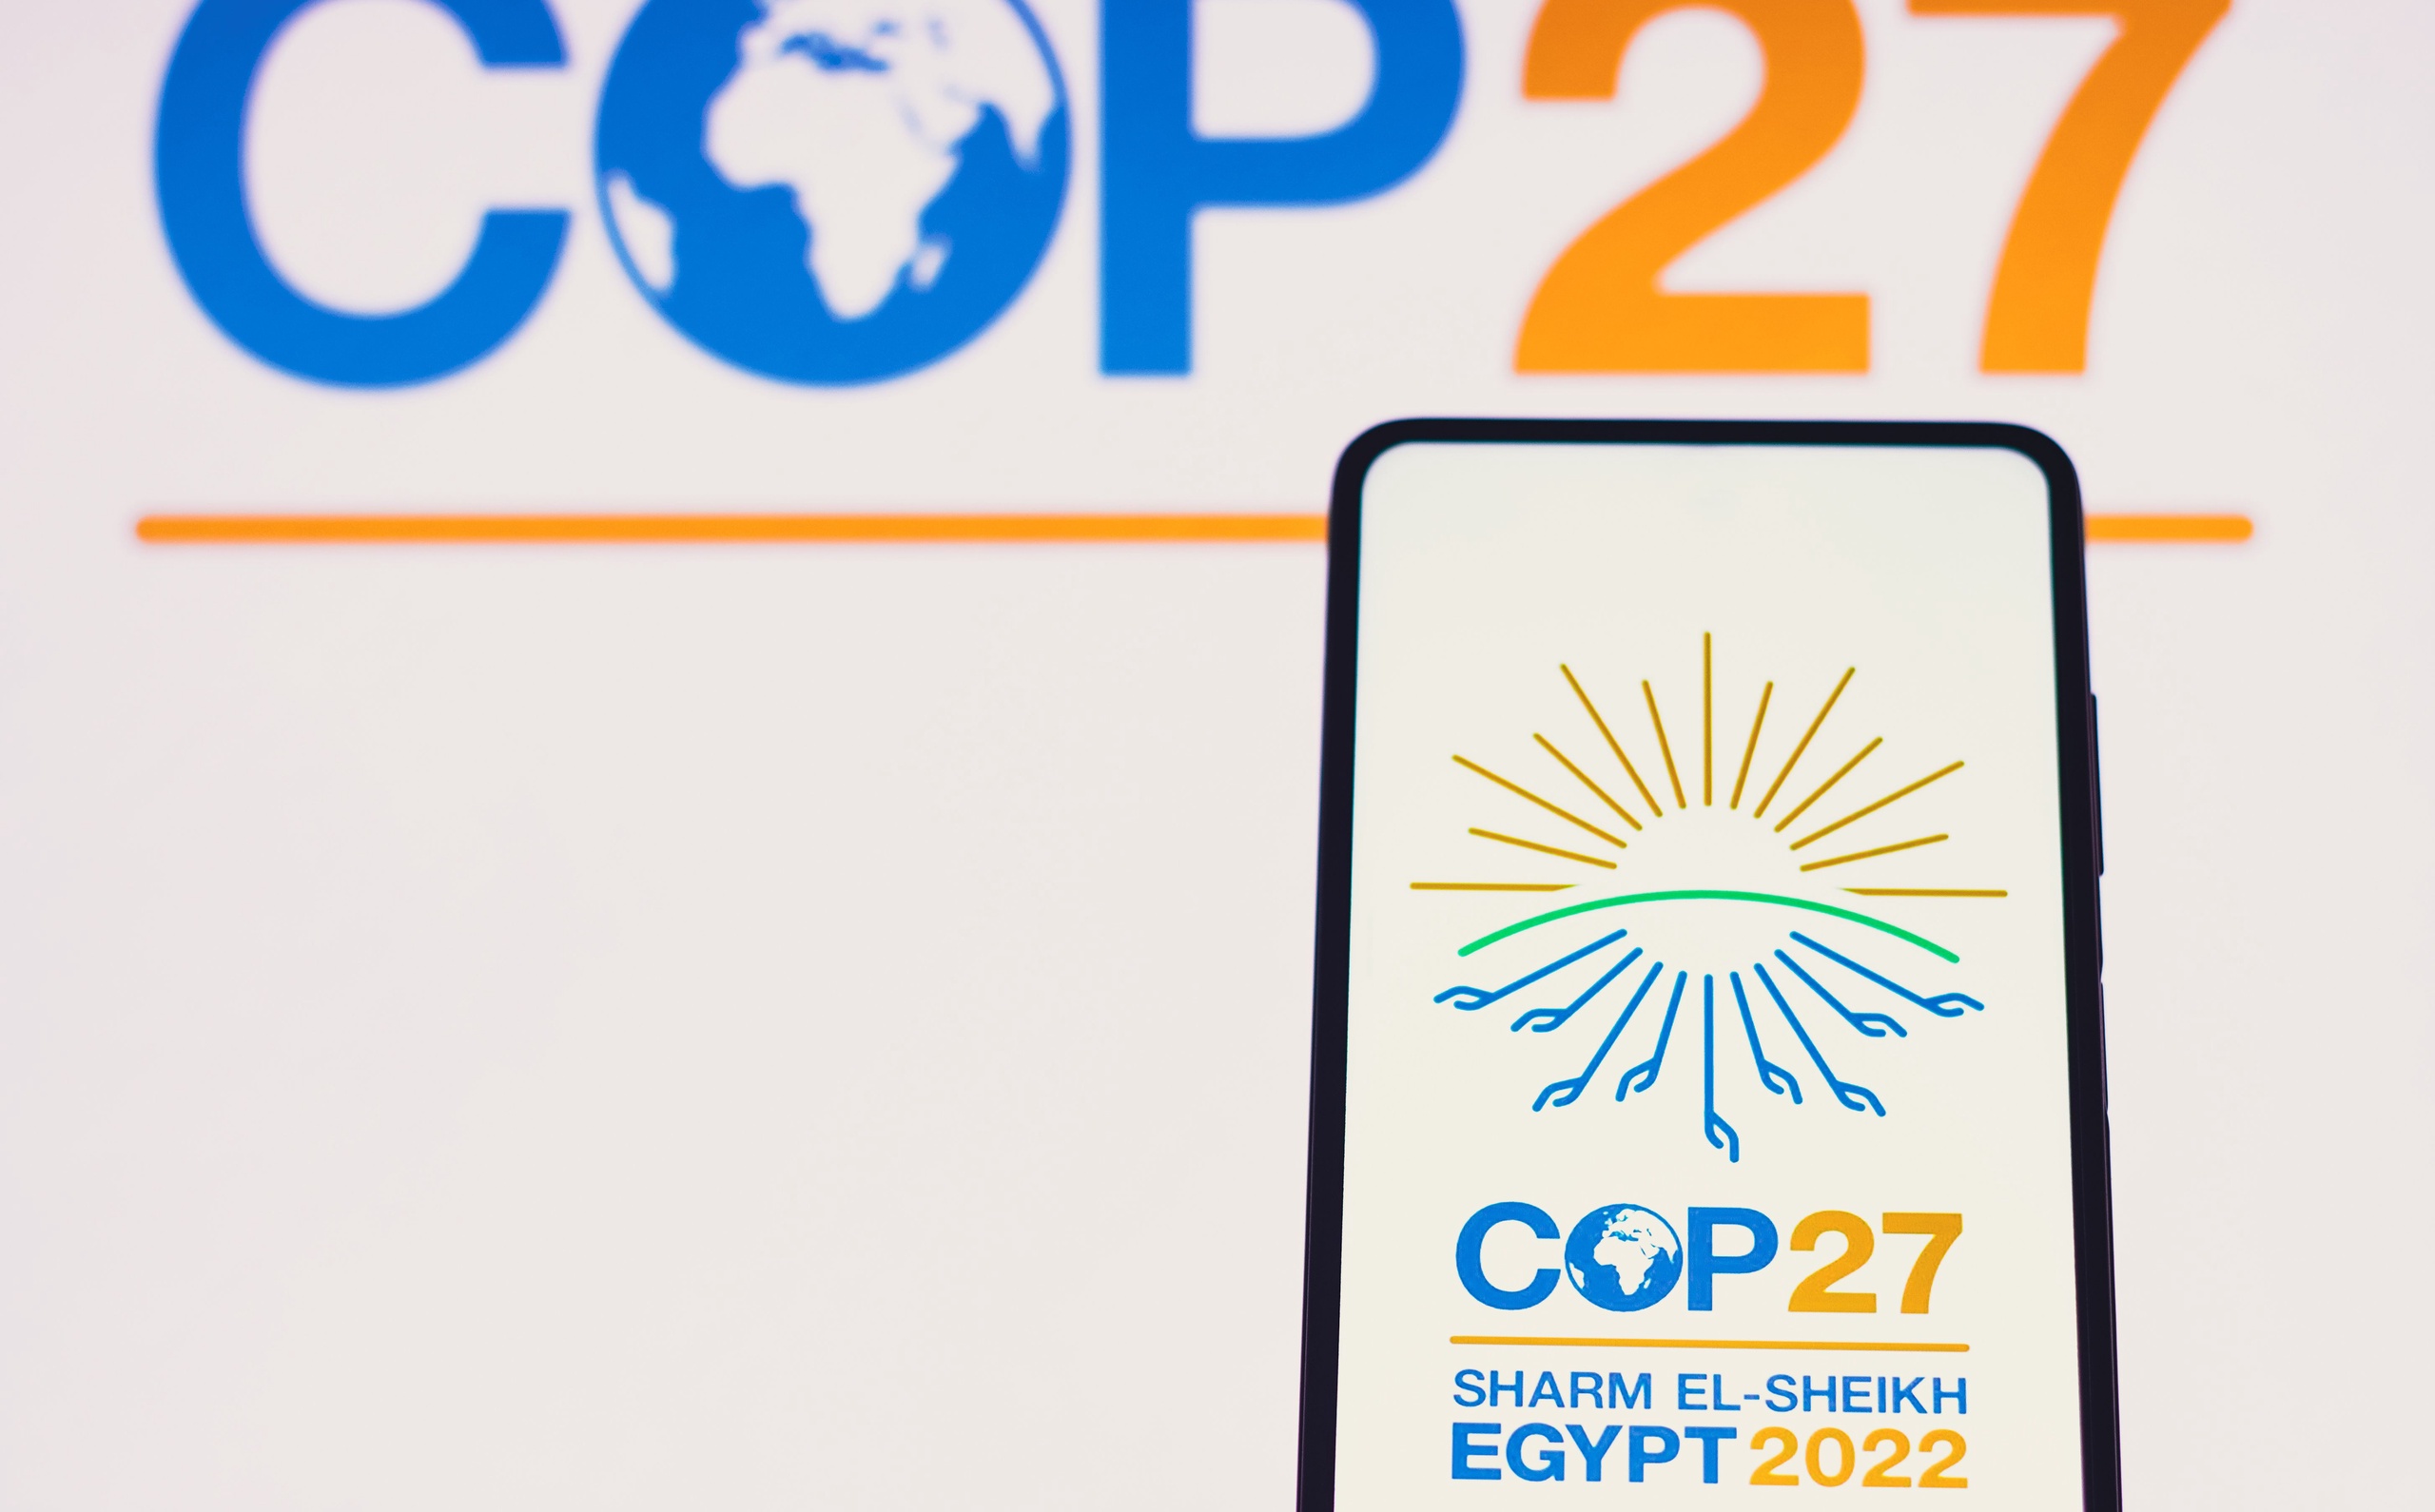 Over een paar maanden is er weer een klimaattop: de COP27. Waar de klimaattop van vorig jaar nog veel klimaatactivisten trok, is het nog maar de vraag hoe dat komende top zal zijn. 